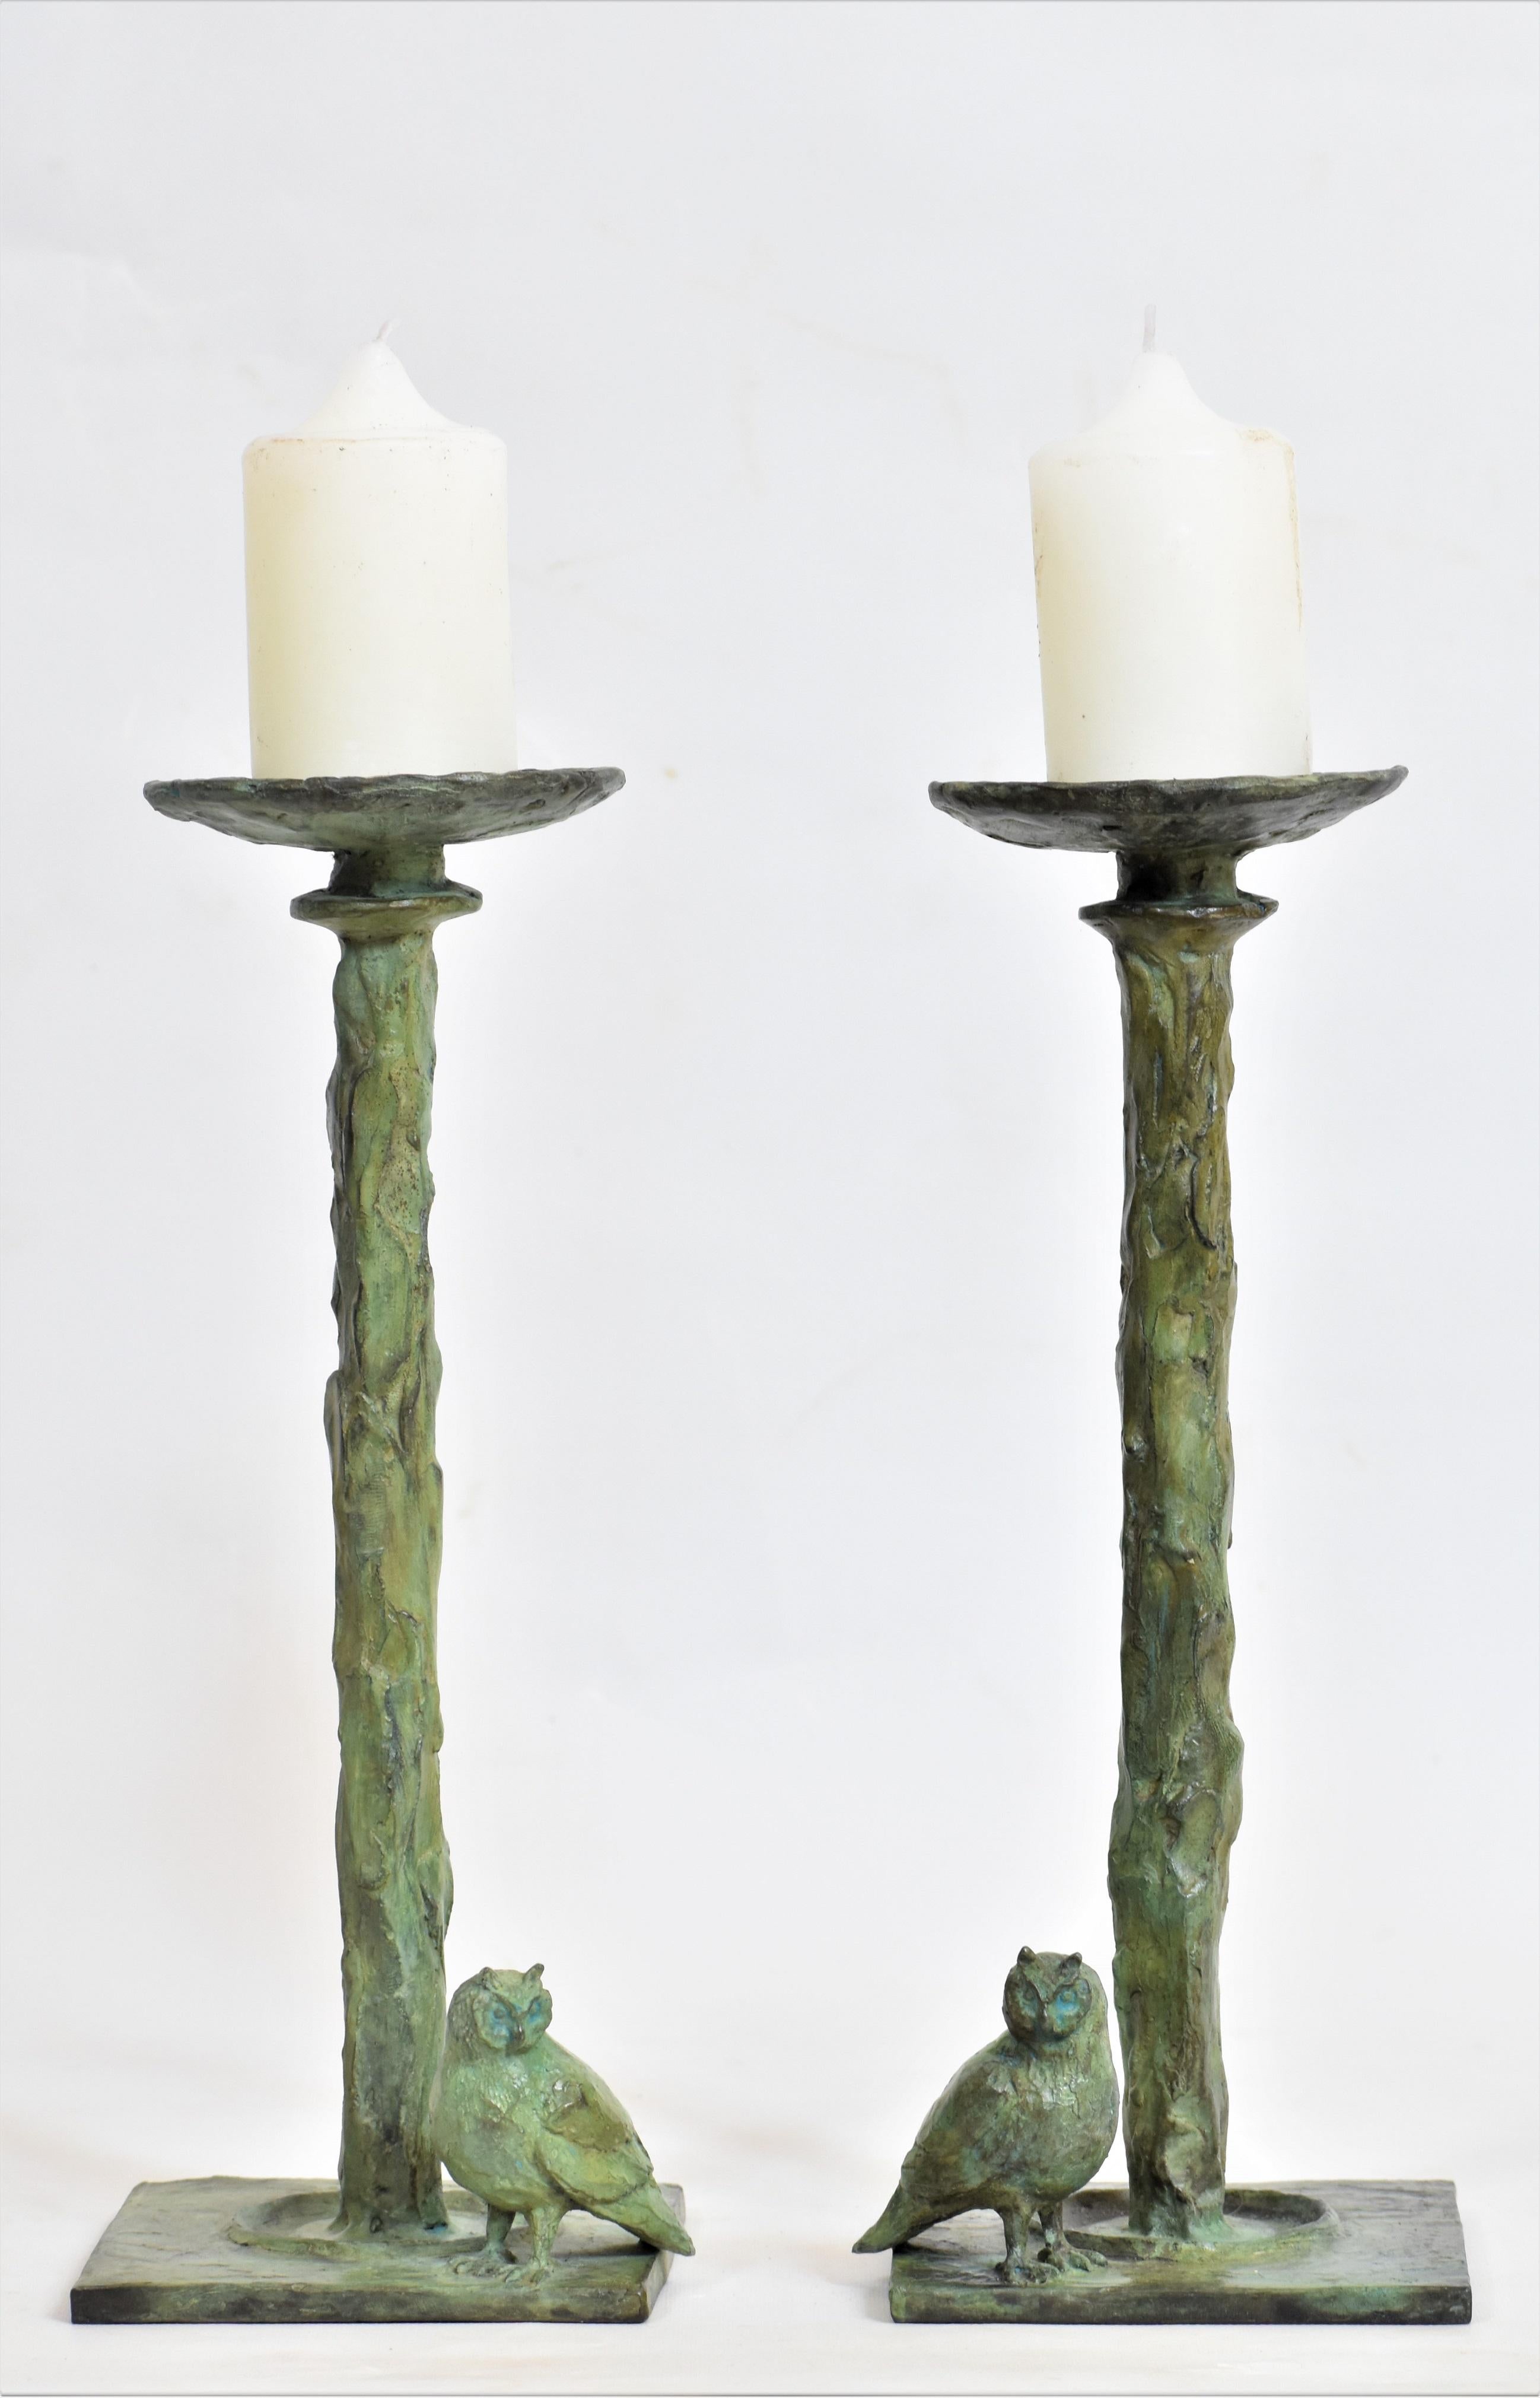 Owl Candlesticks in Bronze Verdigris, kommt als ein Paar, jede Höhe 28 cm x 11 cm x 11 cm Kerzenhalter in Bronze gegossen mit kleinen Bronze-Eule. Kerzen sind nicht vorgesehen.

Ähnliche bronzene Einzel- und Doppelkerzenständer in verschiedenen